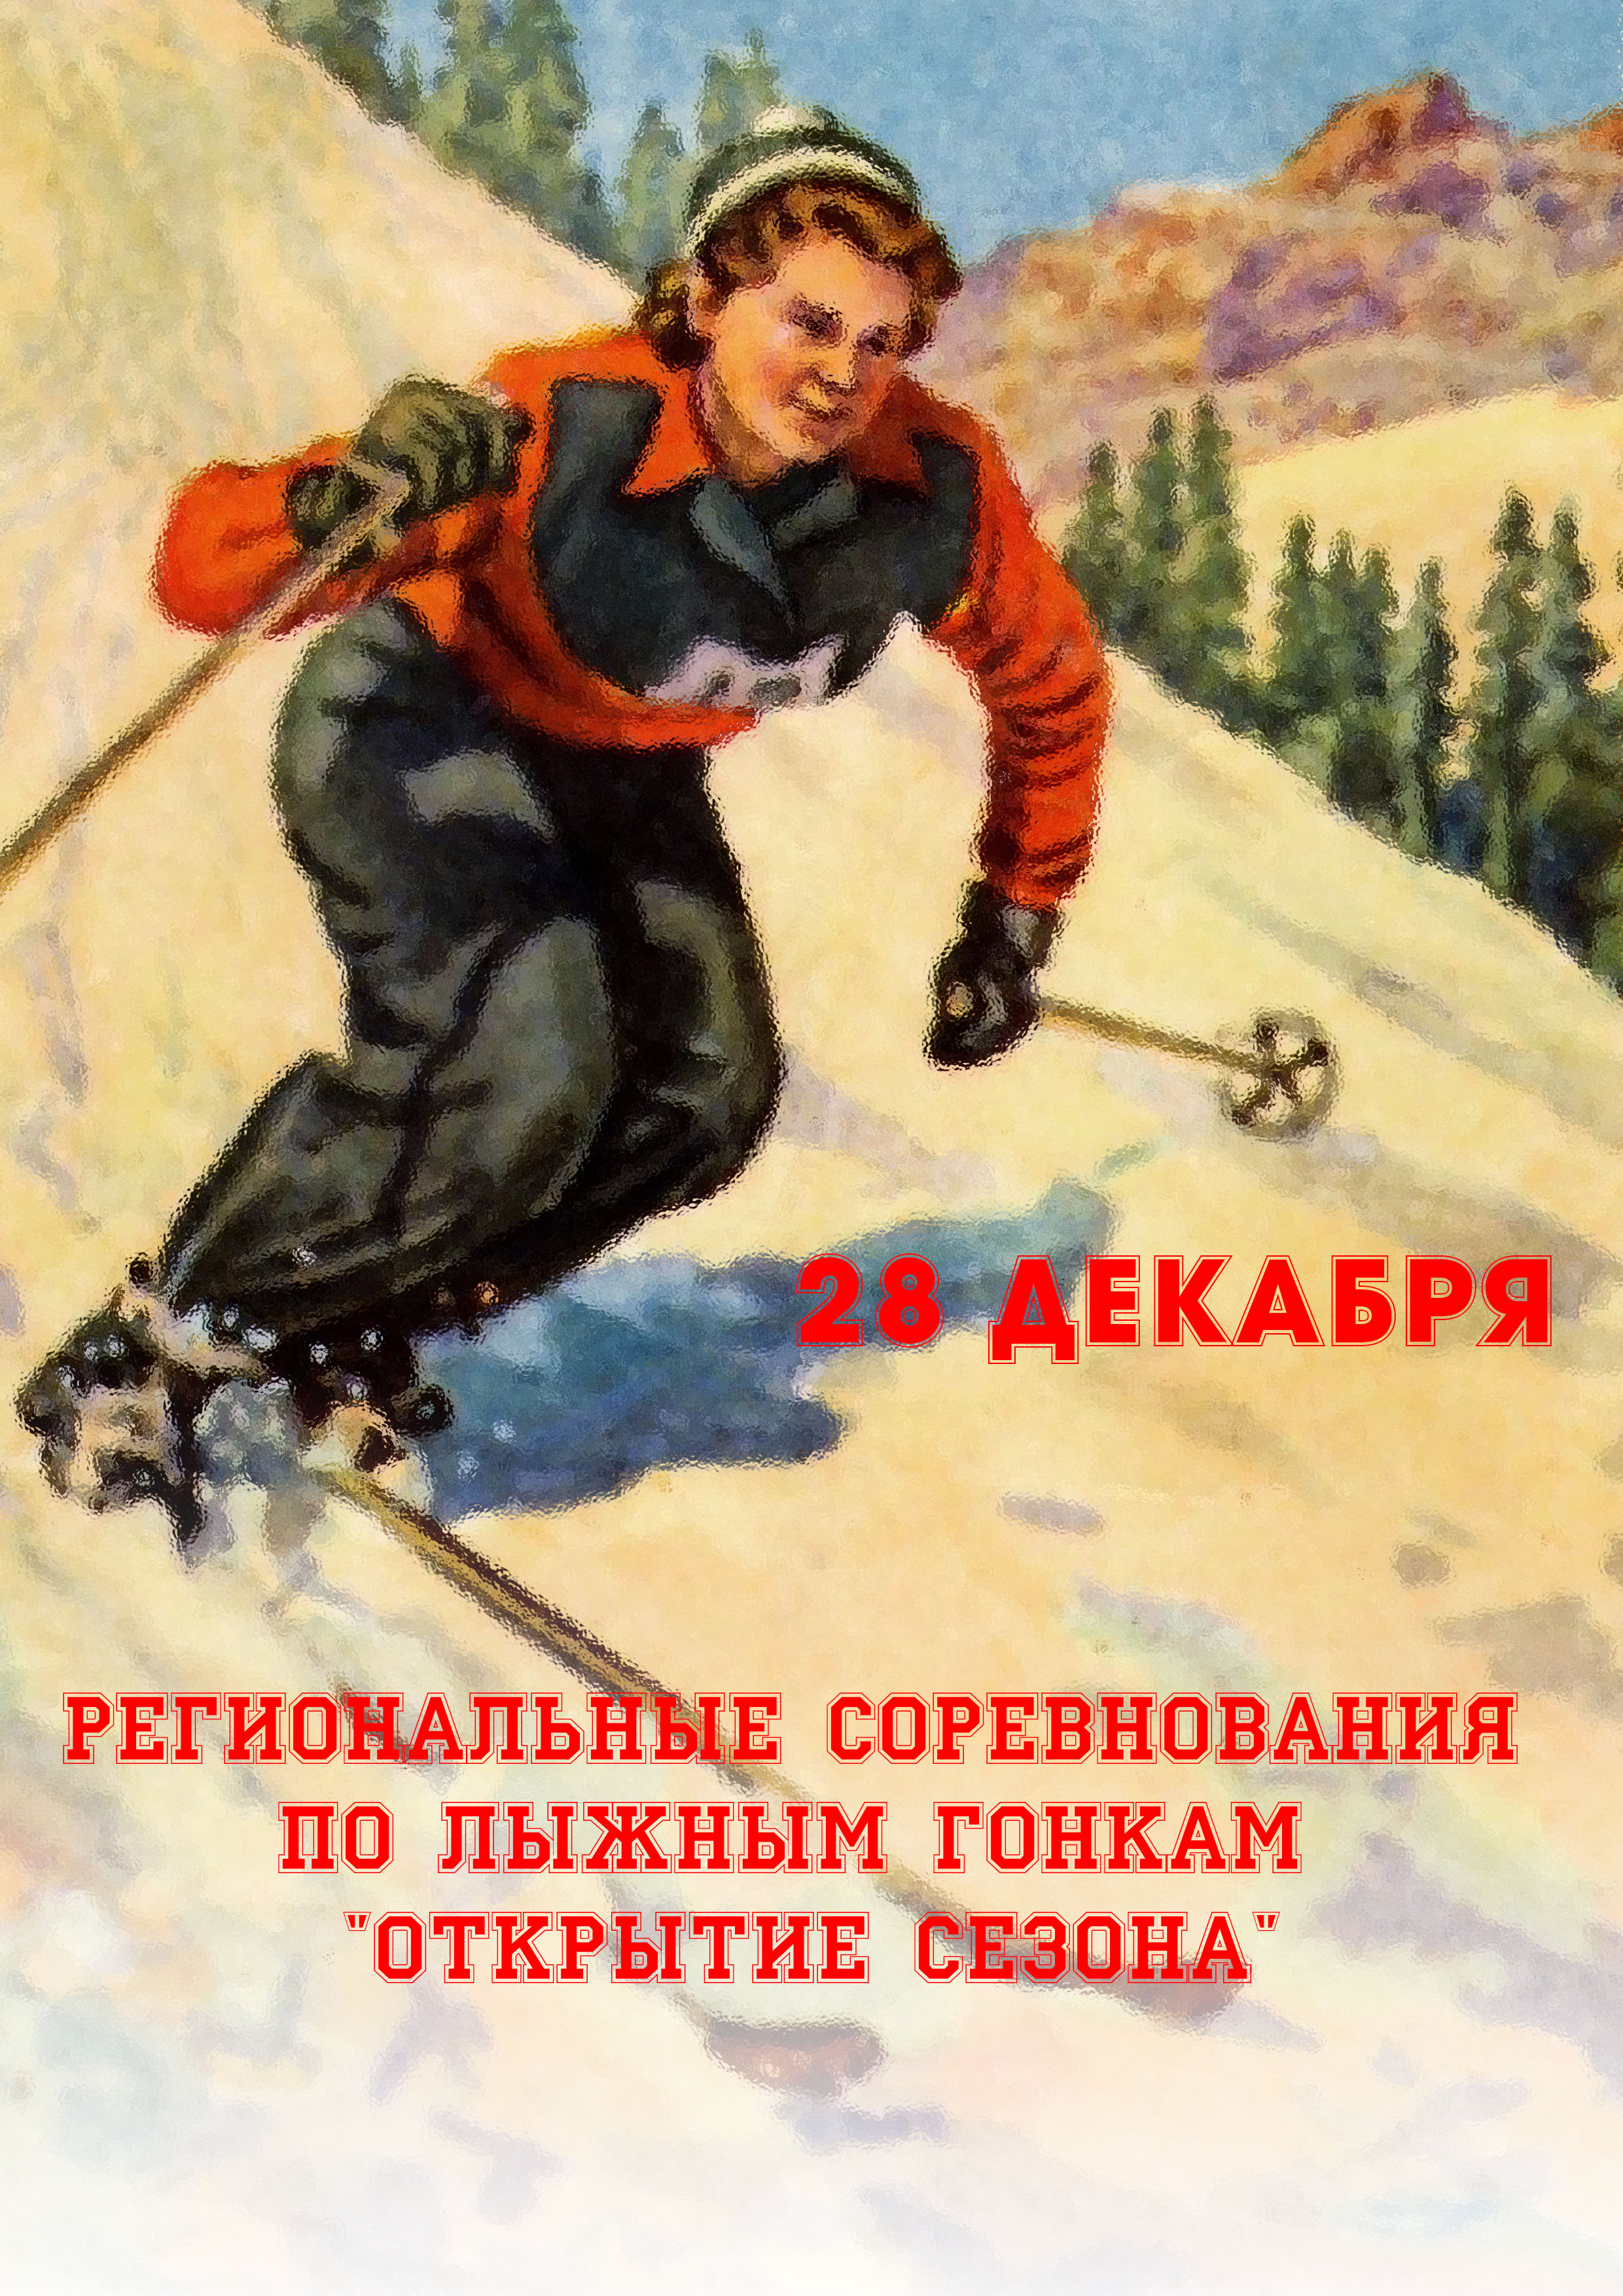 Региональные соревнования по лыжным гонкам "Открытие сезона" 28  ዲሴምበር
 2023  ዓመት
 